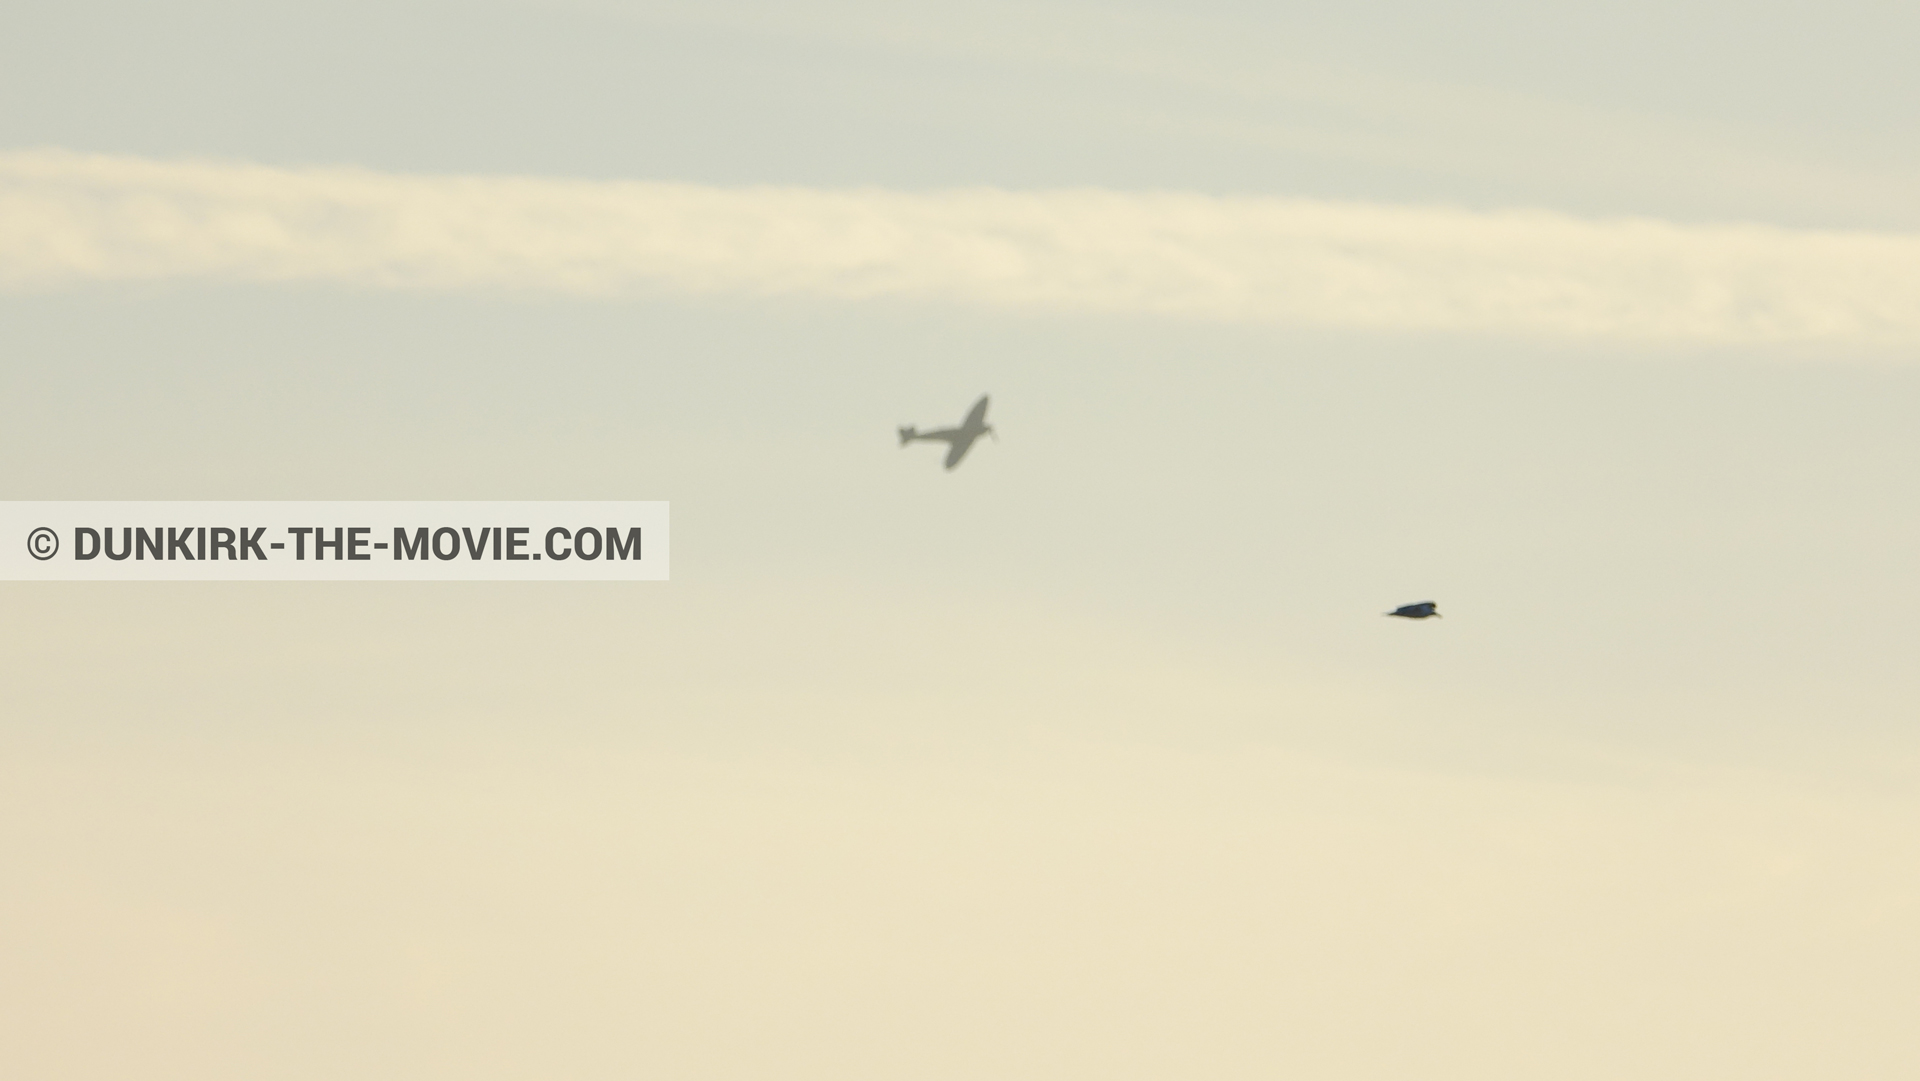 Fotos con avion, cielo anaranjado,  durante el rodaje de la película Dunkerque de Nolan